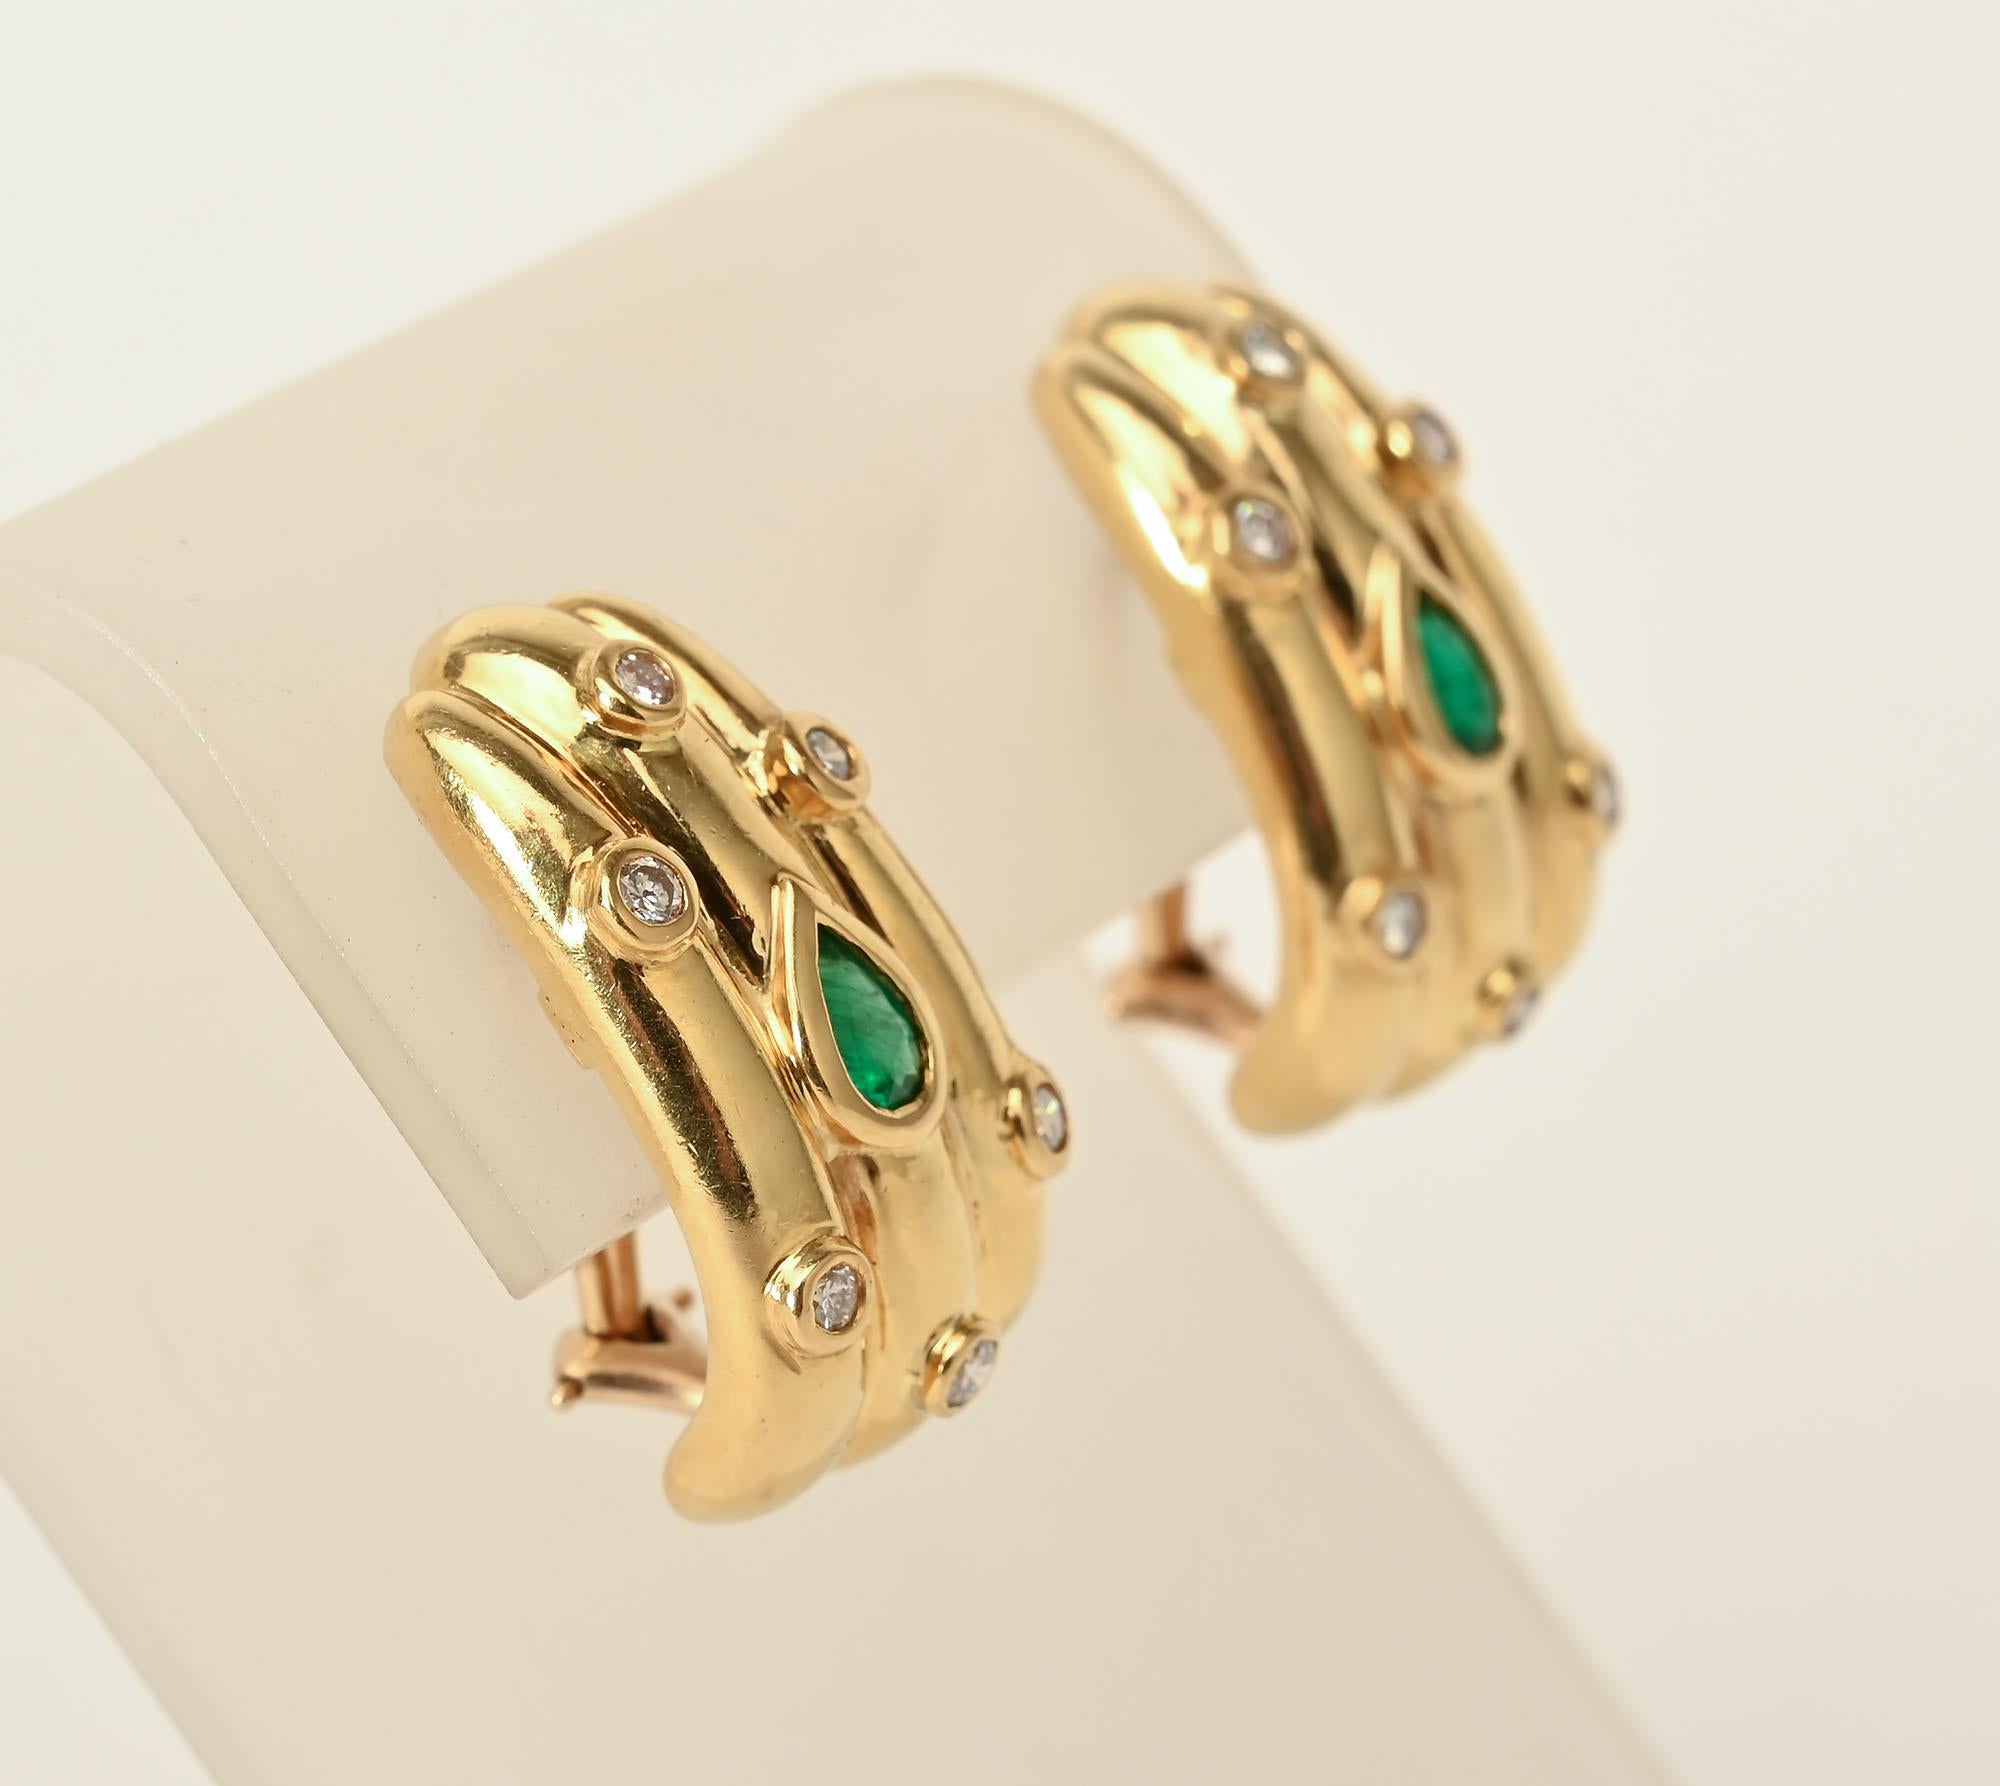 Große Ohrringe aus 18 Karat Gold mit drei Rippen, in deren Mitte sich ein birnenförmiger Smaragd befindet, umgeben von 6 runden Diamanten. Omega-Rücken. Herstellermarke JDI.